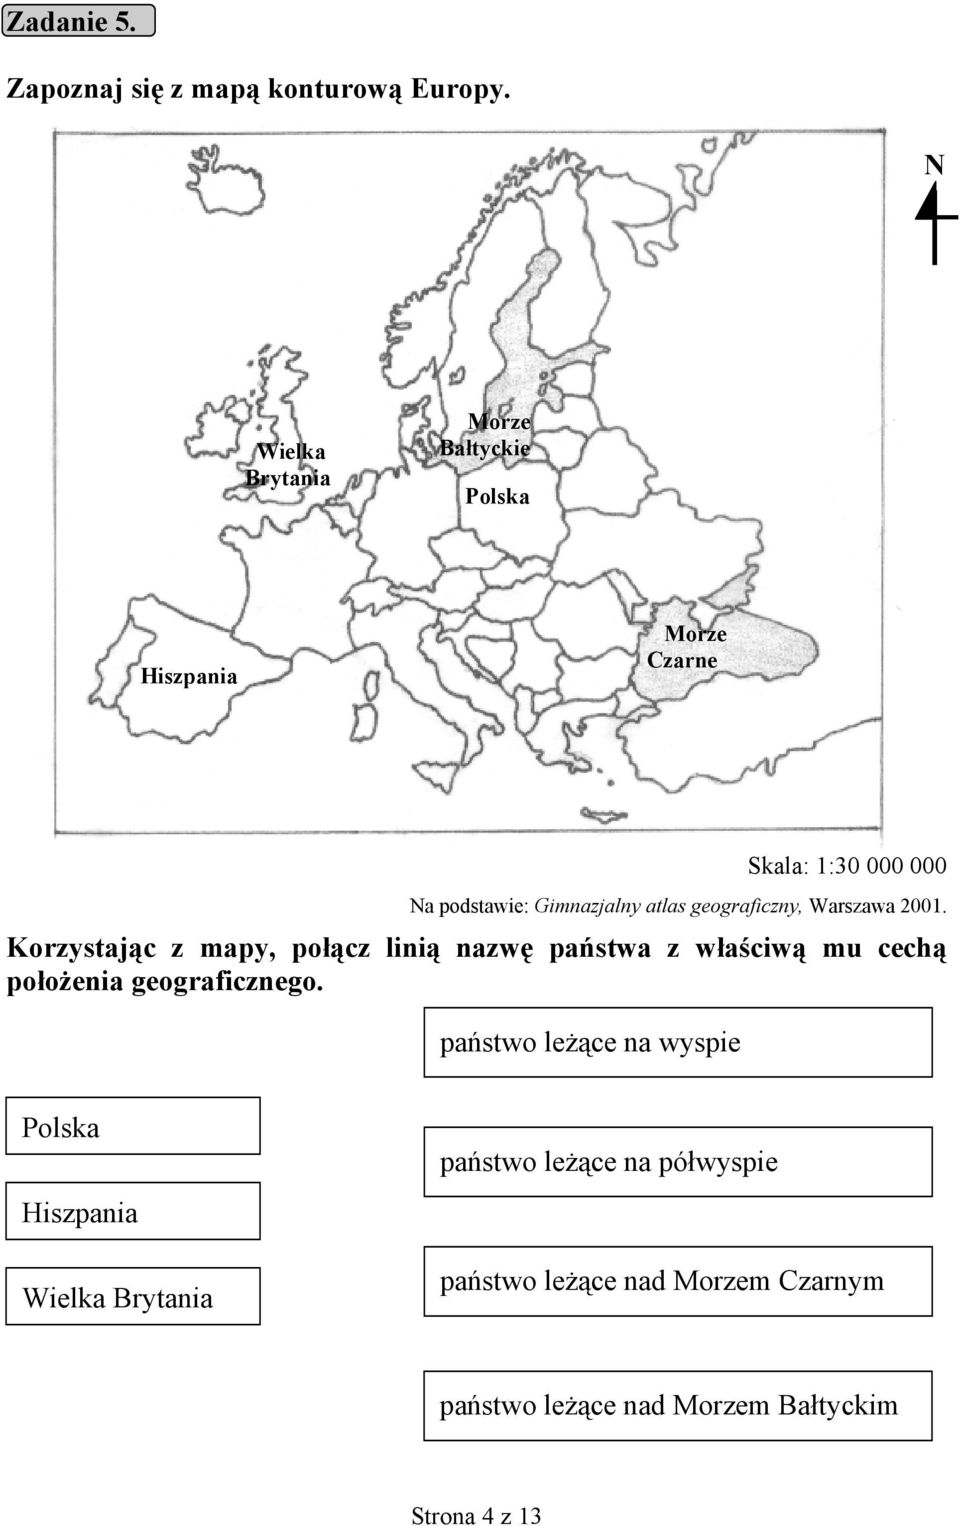 Gimnazjalny atlas geograficzny, Warszawa 2001.